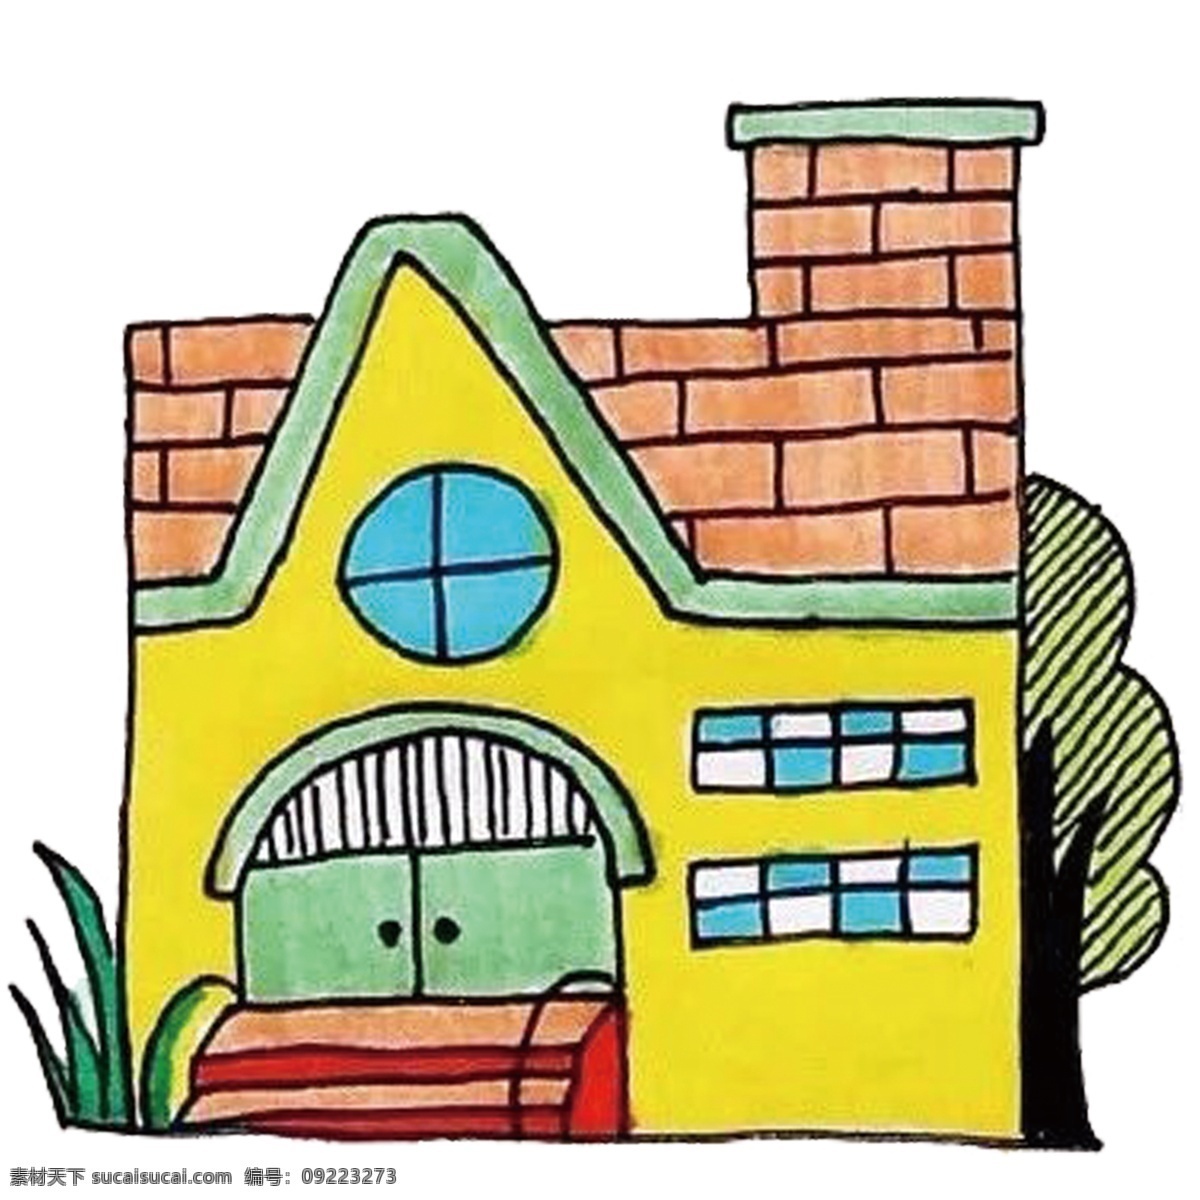 卡通房子 卡通 房子 小蝌蚪找妈妈 小房子 卡通设计